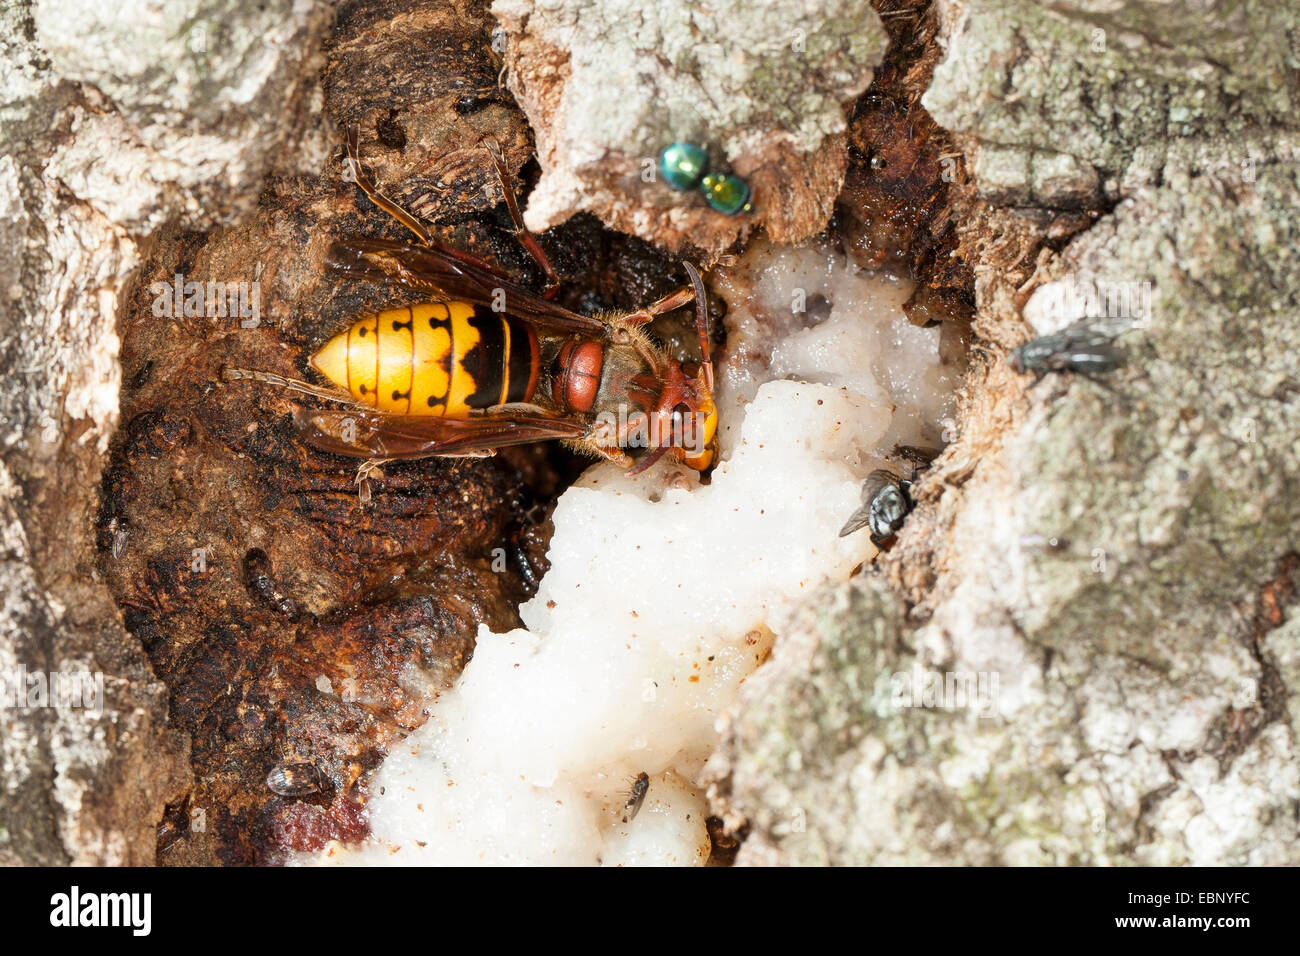 Hornet, brown, hornet hornet Européen (Vespa crabro), léchant le jus d'arbre à un tronc de chêne blessé, Allemagne Banque D'Images